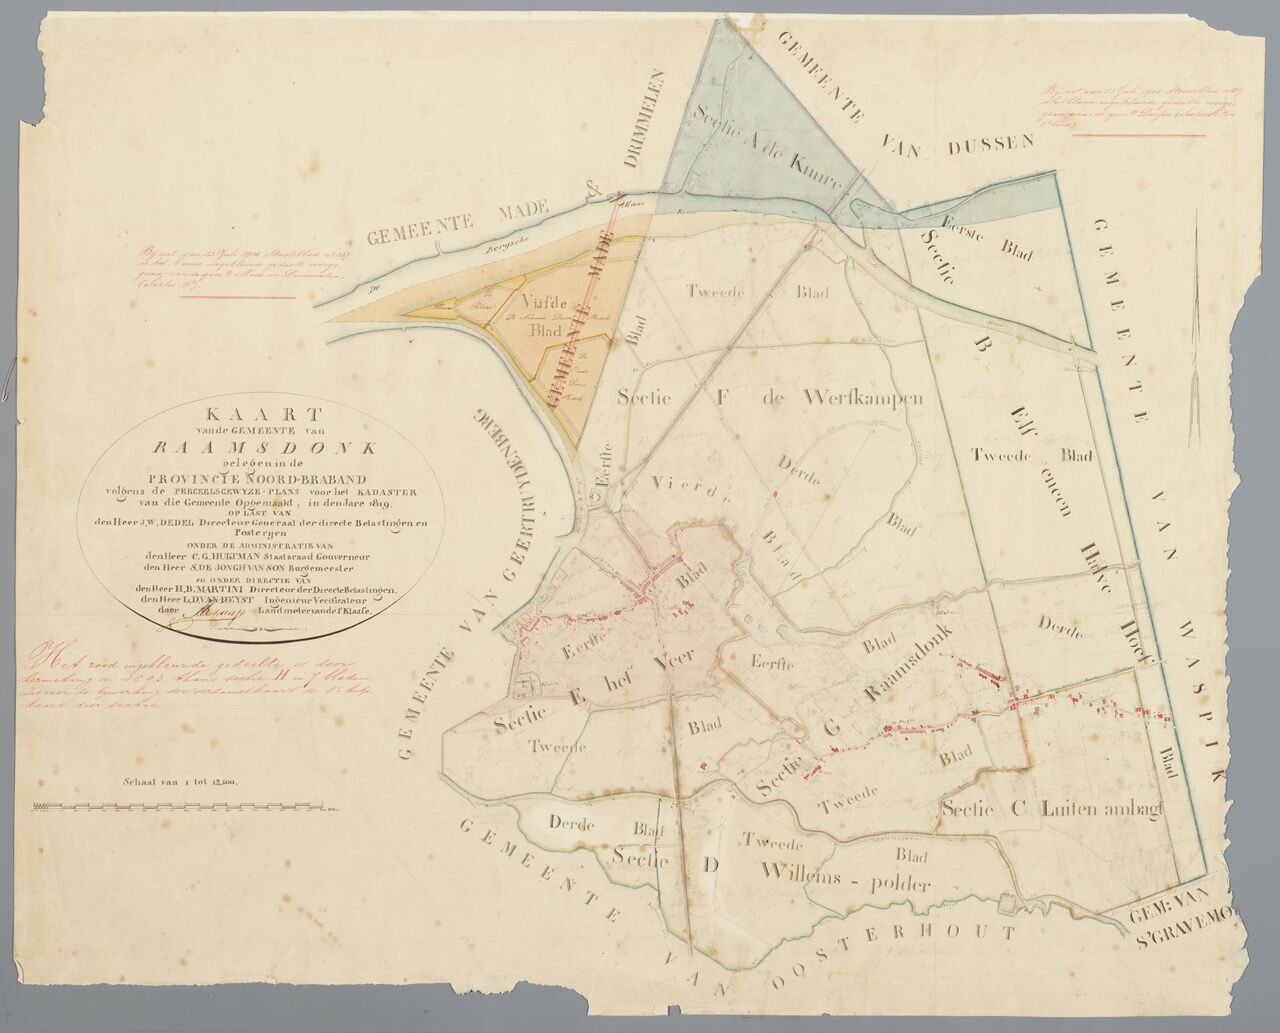 Kadastrale kaart 1811-1832: verzamelplan Raamsdonk, Noord Brabant (MIN10127VK1) Gemeentecode 10127 - Minuutplan Raamsdonk Sectie A - G Blad Verzamelplan